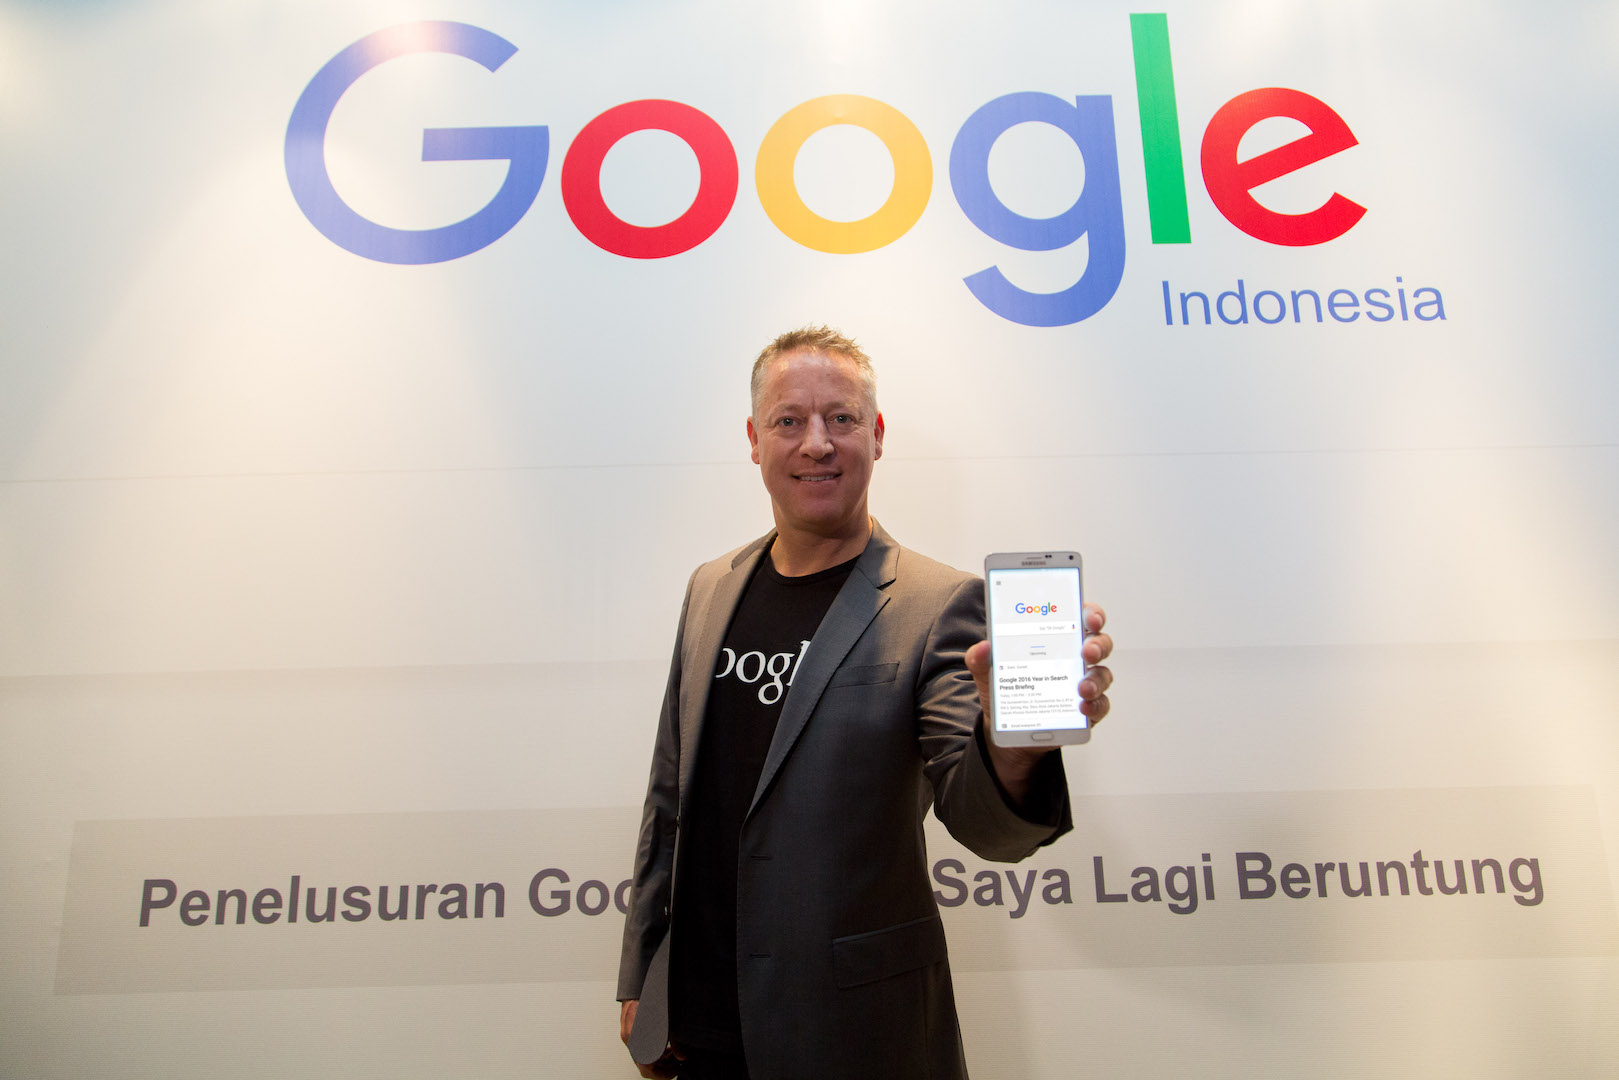 Daftar Pencarian Paling Populer di Google Indonesia